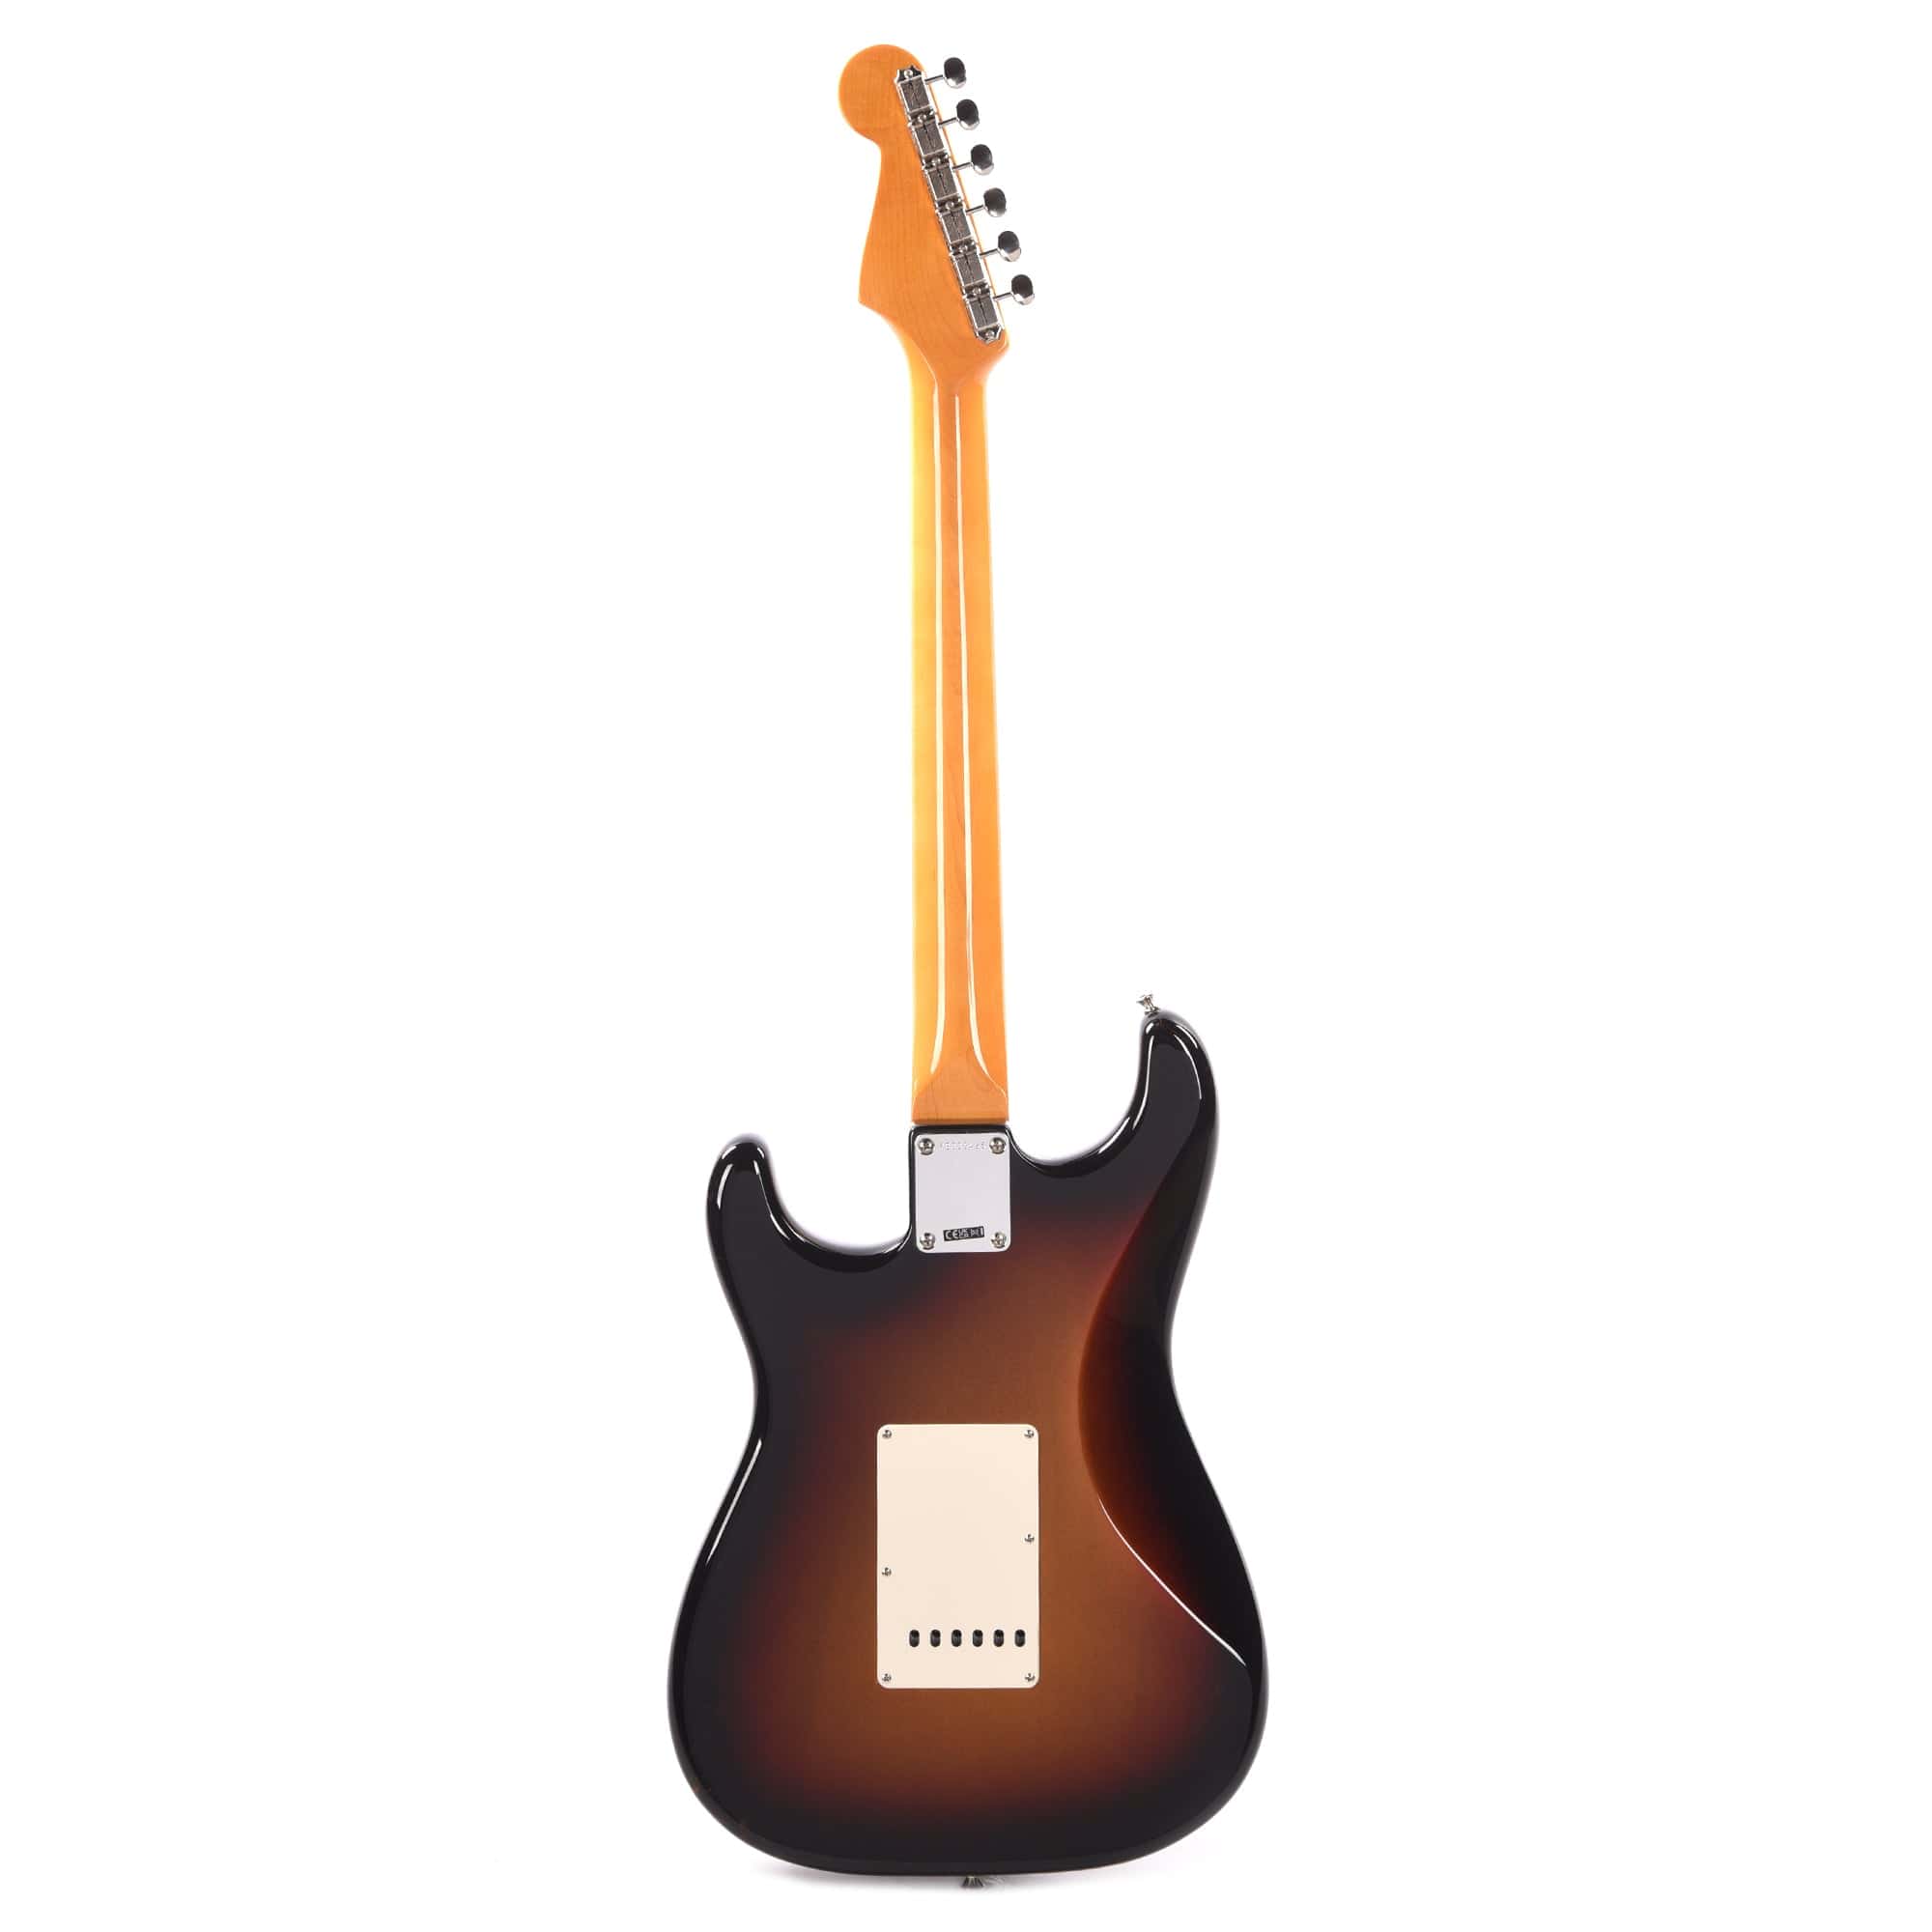 Fender American Vintage II 1961 Stratocaster 3-Color Sunburst Electric Guitars / Solid Body